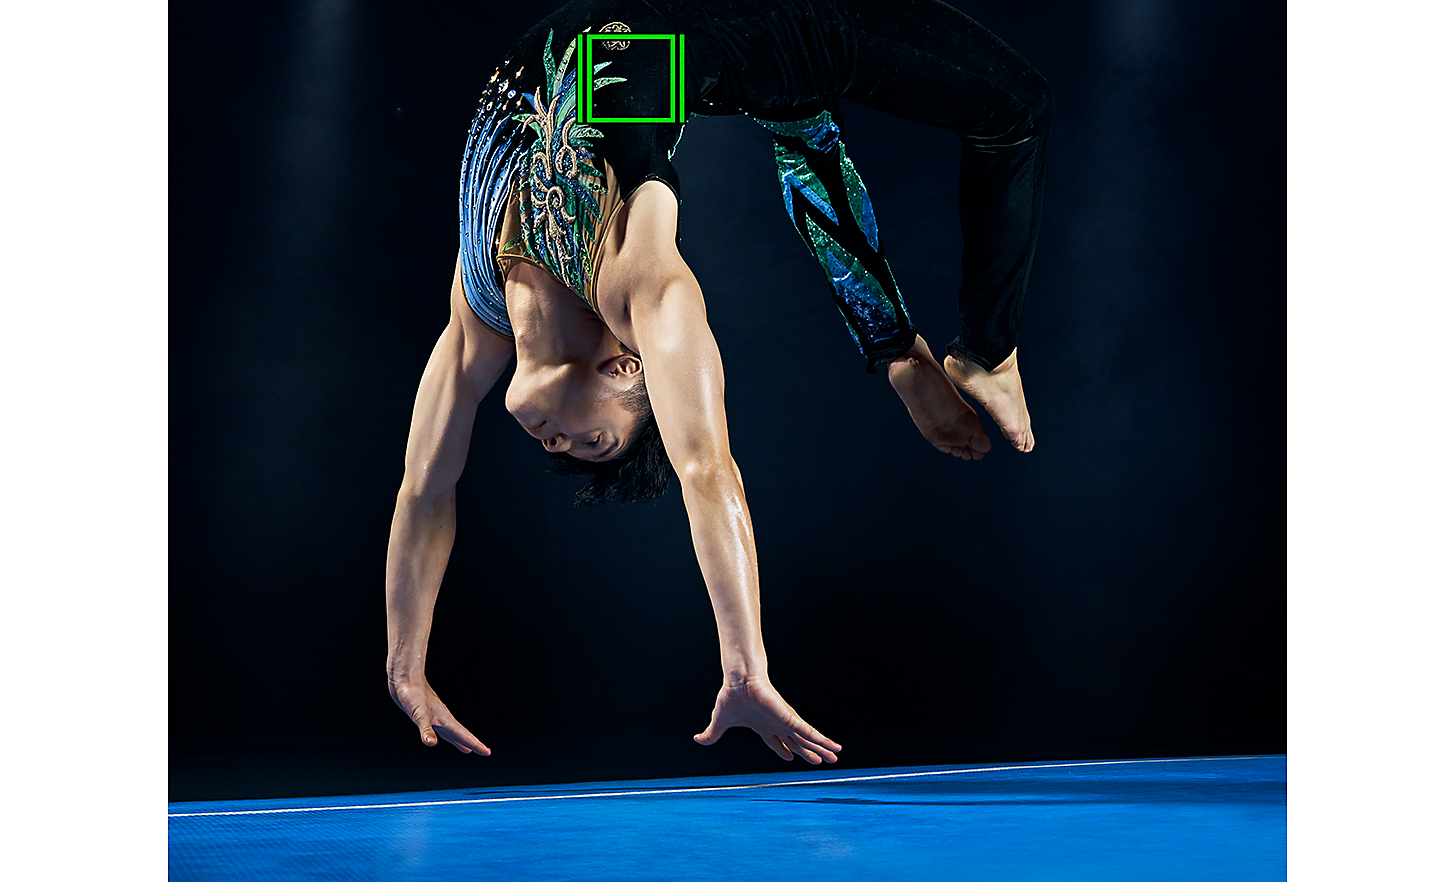 Dynamisk bild av en gymnast som utför en sekvens – den gröna rutan representerar spårning i realtid